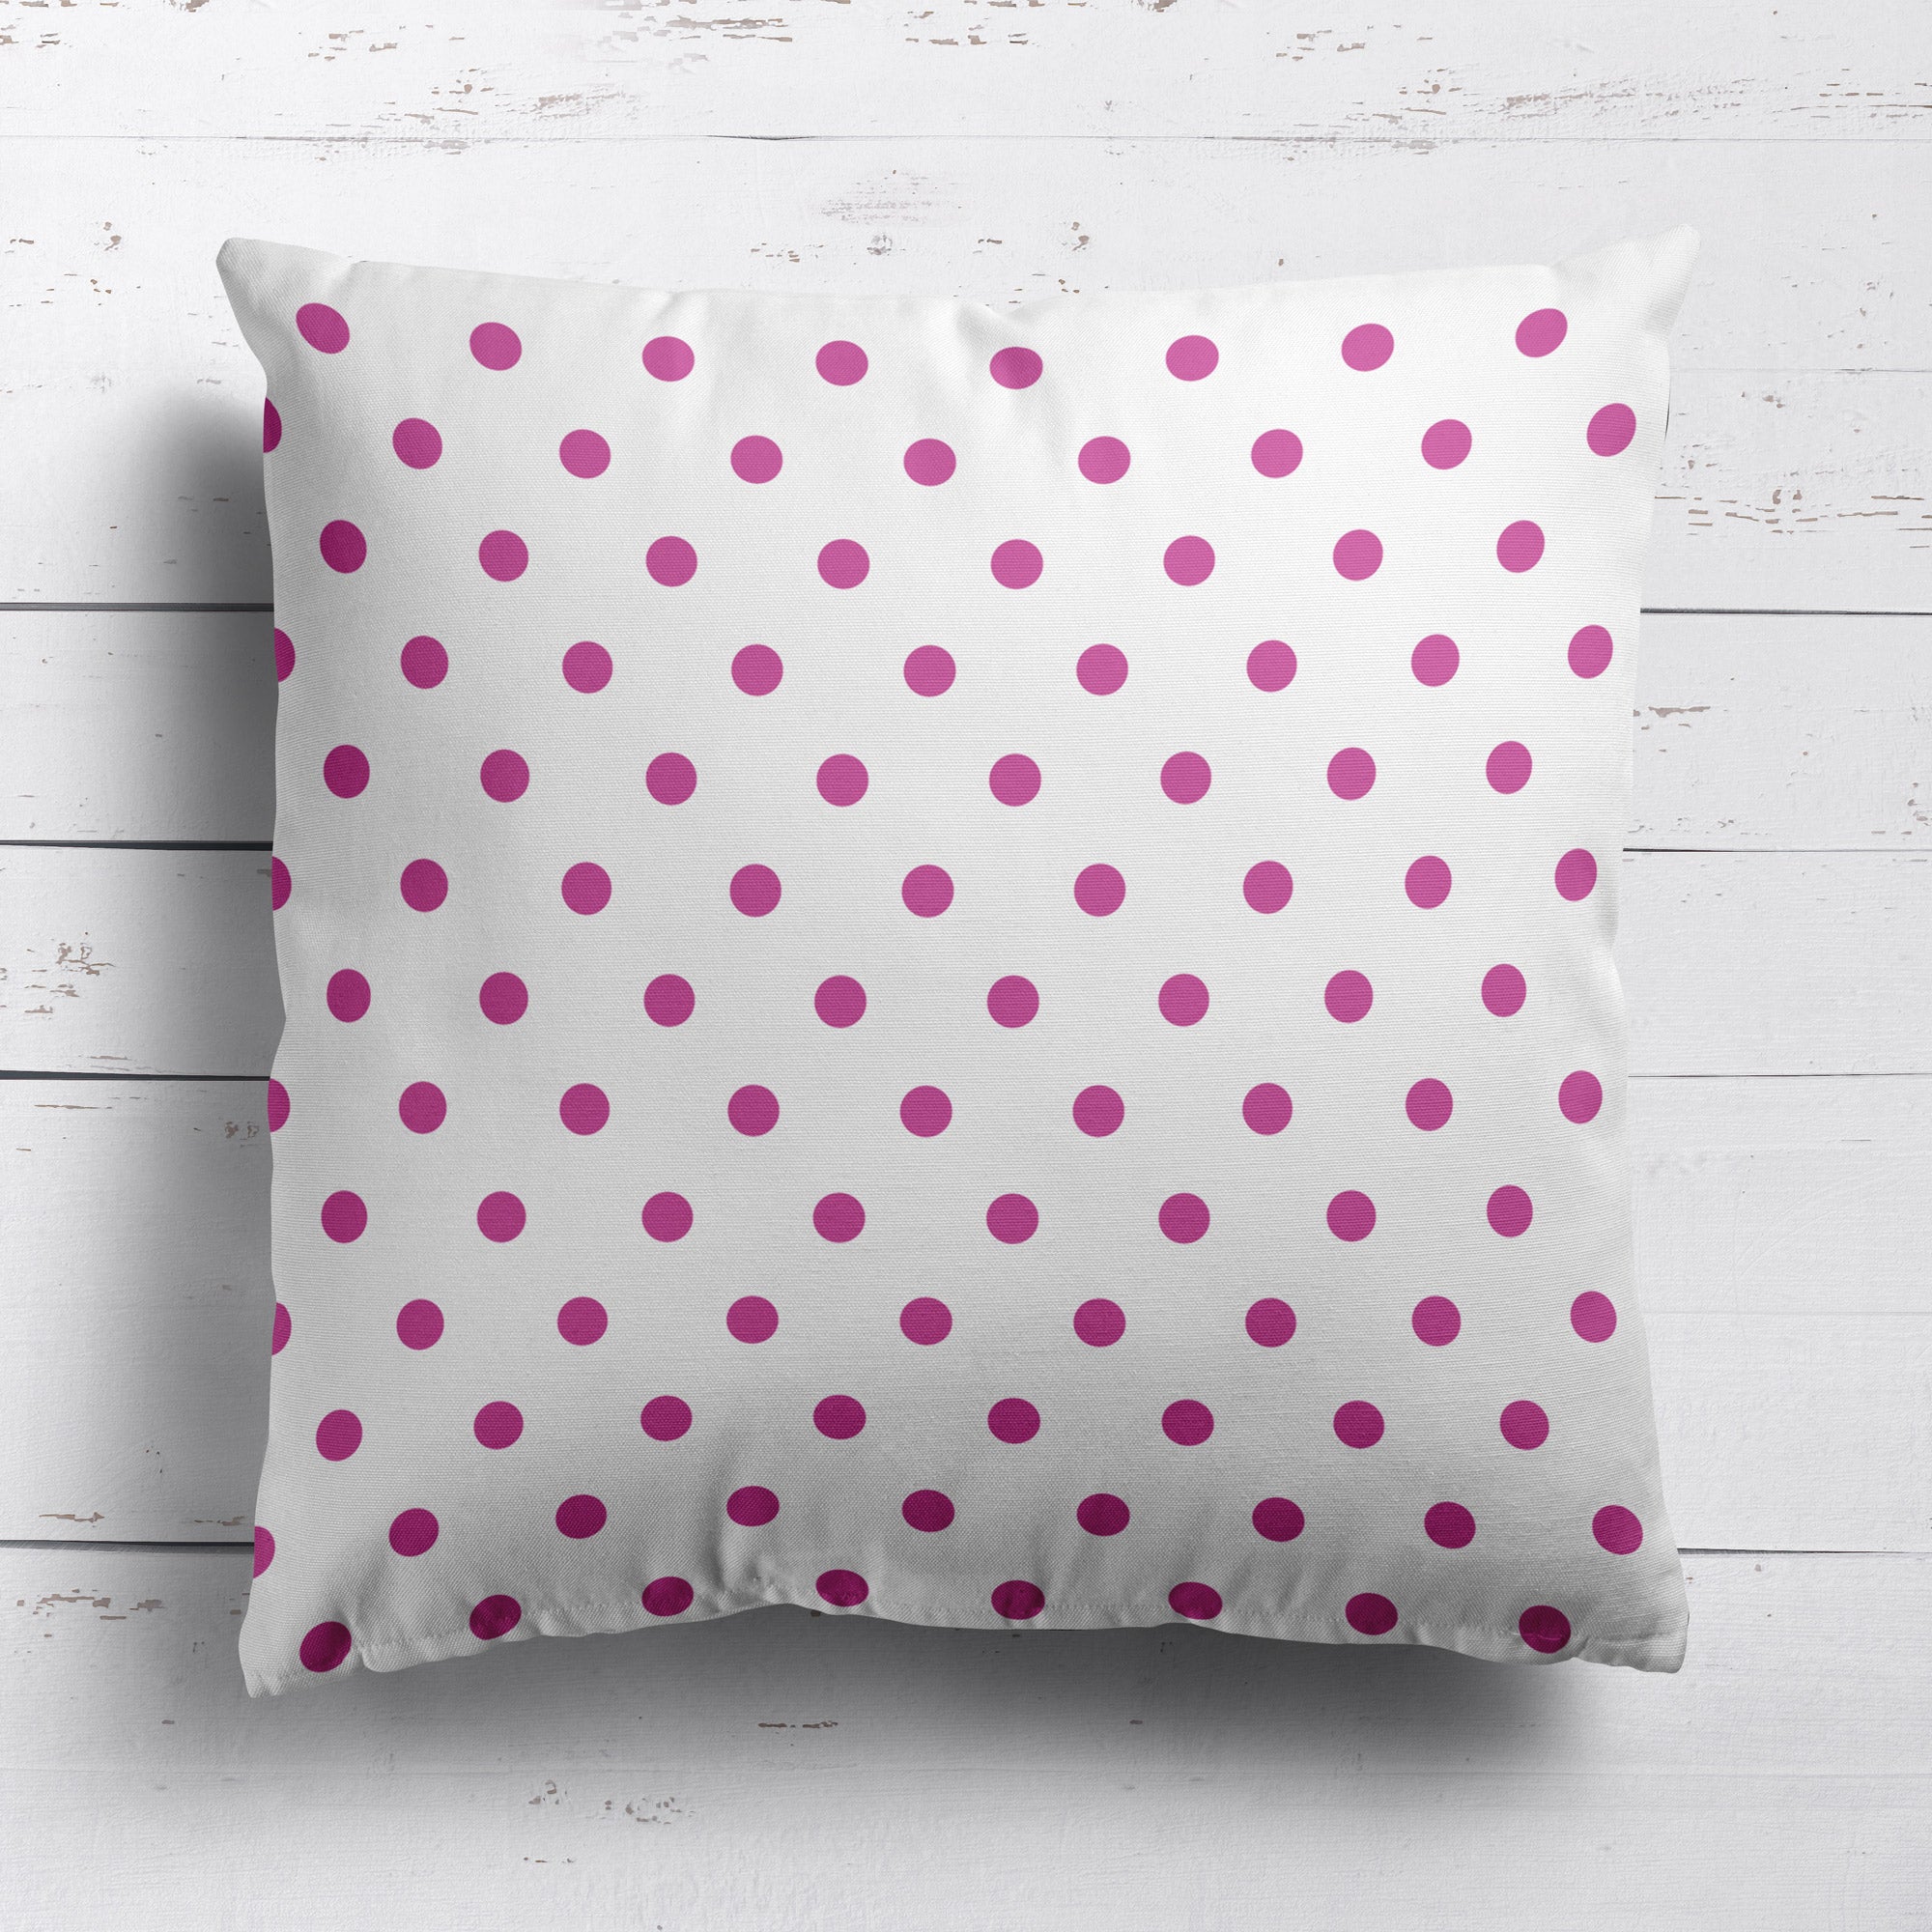 Spot Dot cotton linen fabric in Raspberry pink